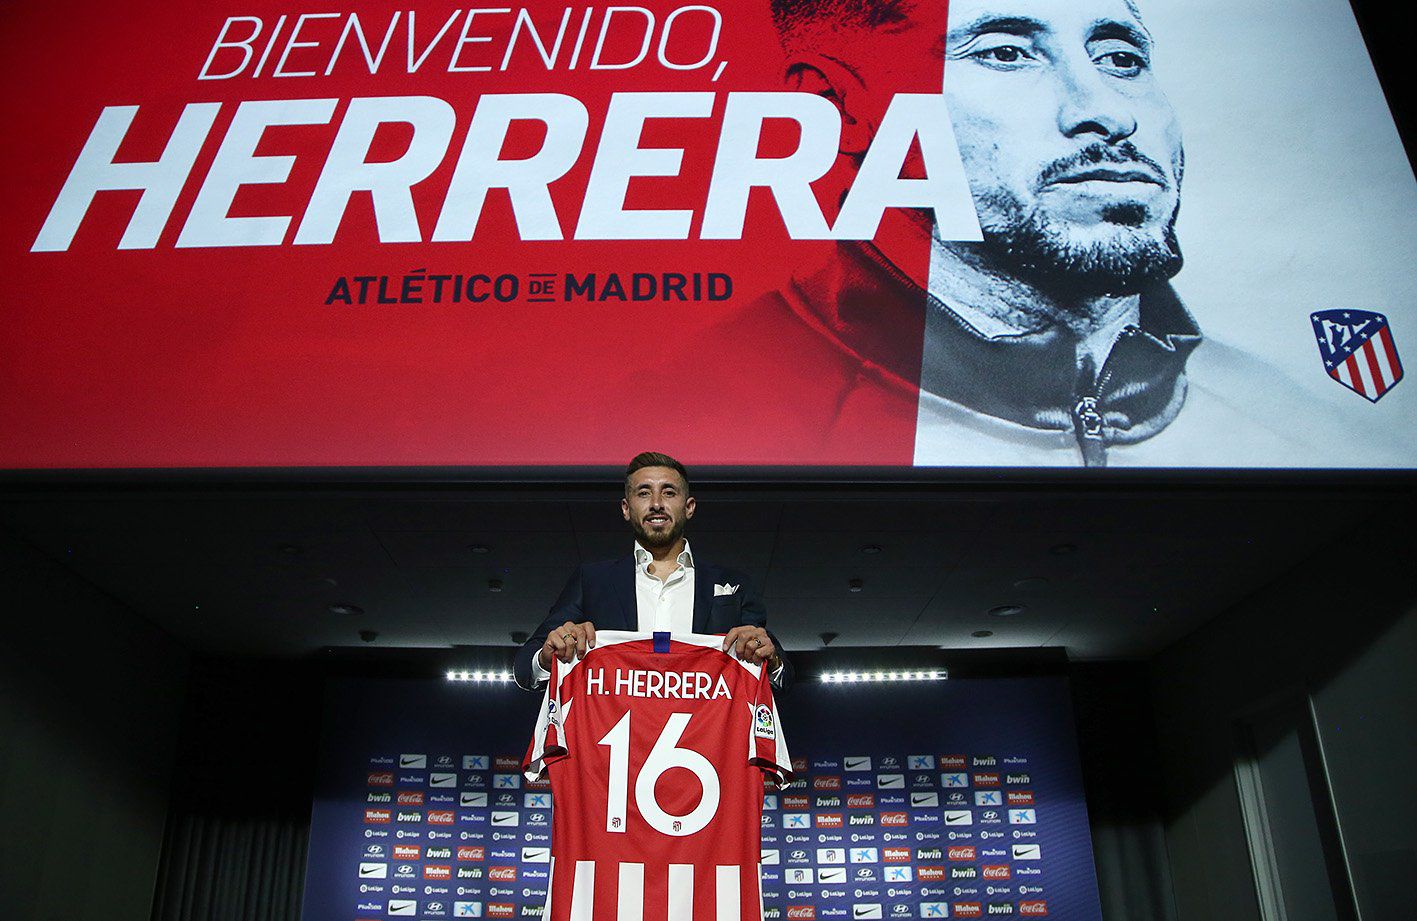 Herrera ahora es parte del Atlético de Madrid, pero no ha tenido continuidad en ese equipo, lo cual le ha significado muchas críticas. (Foto: Atlético de Madrid)